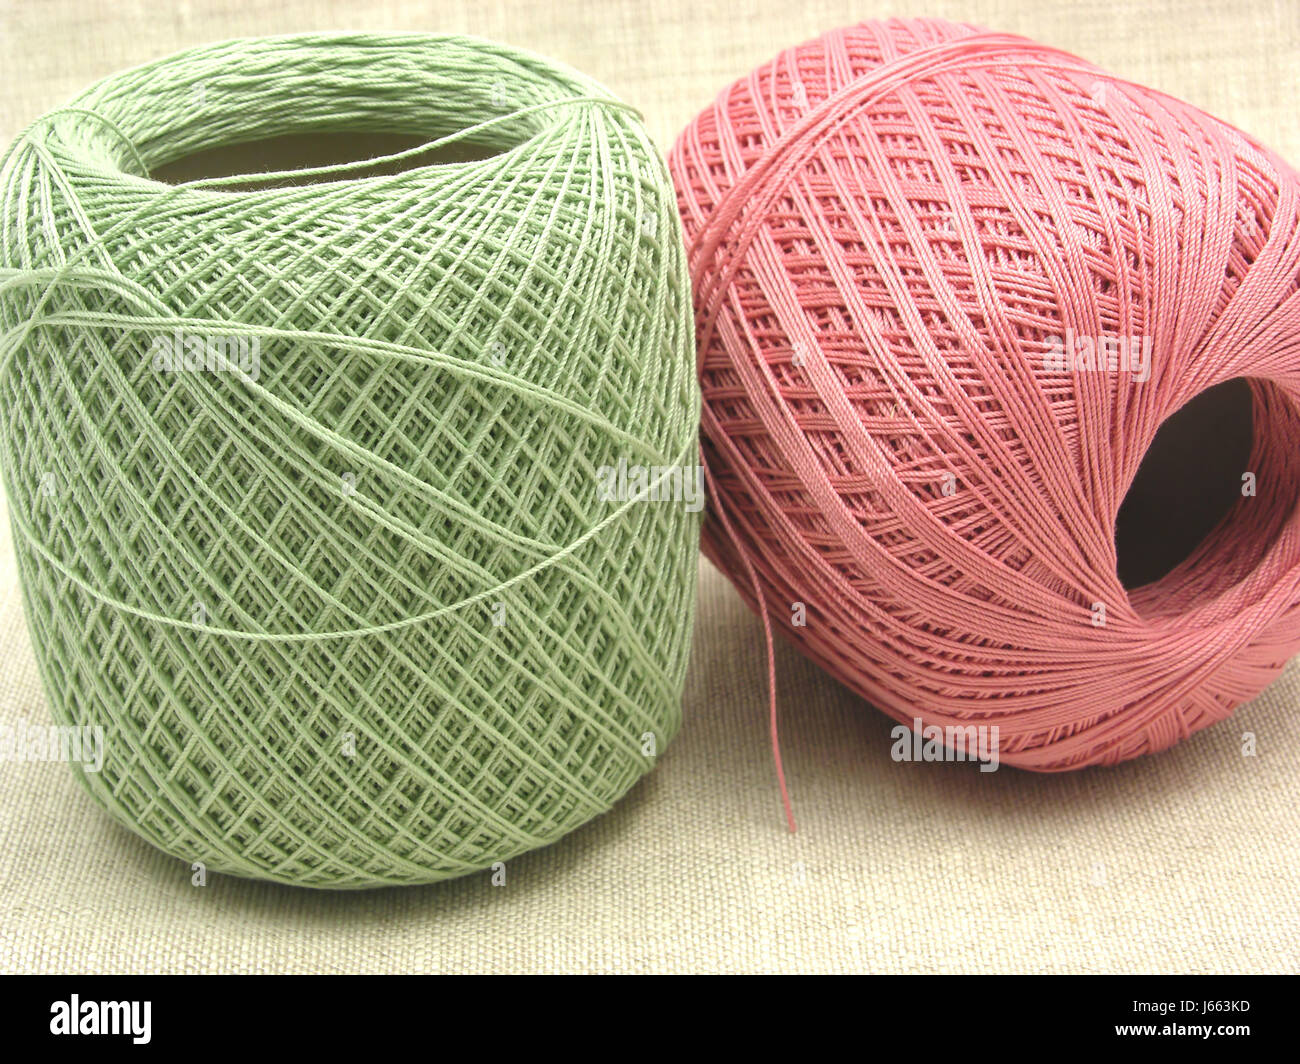 Artesanías tejido de lana hilados de lana bolas crochet lana tejida de hilados de algodón de artesanía Foto de stock